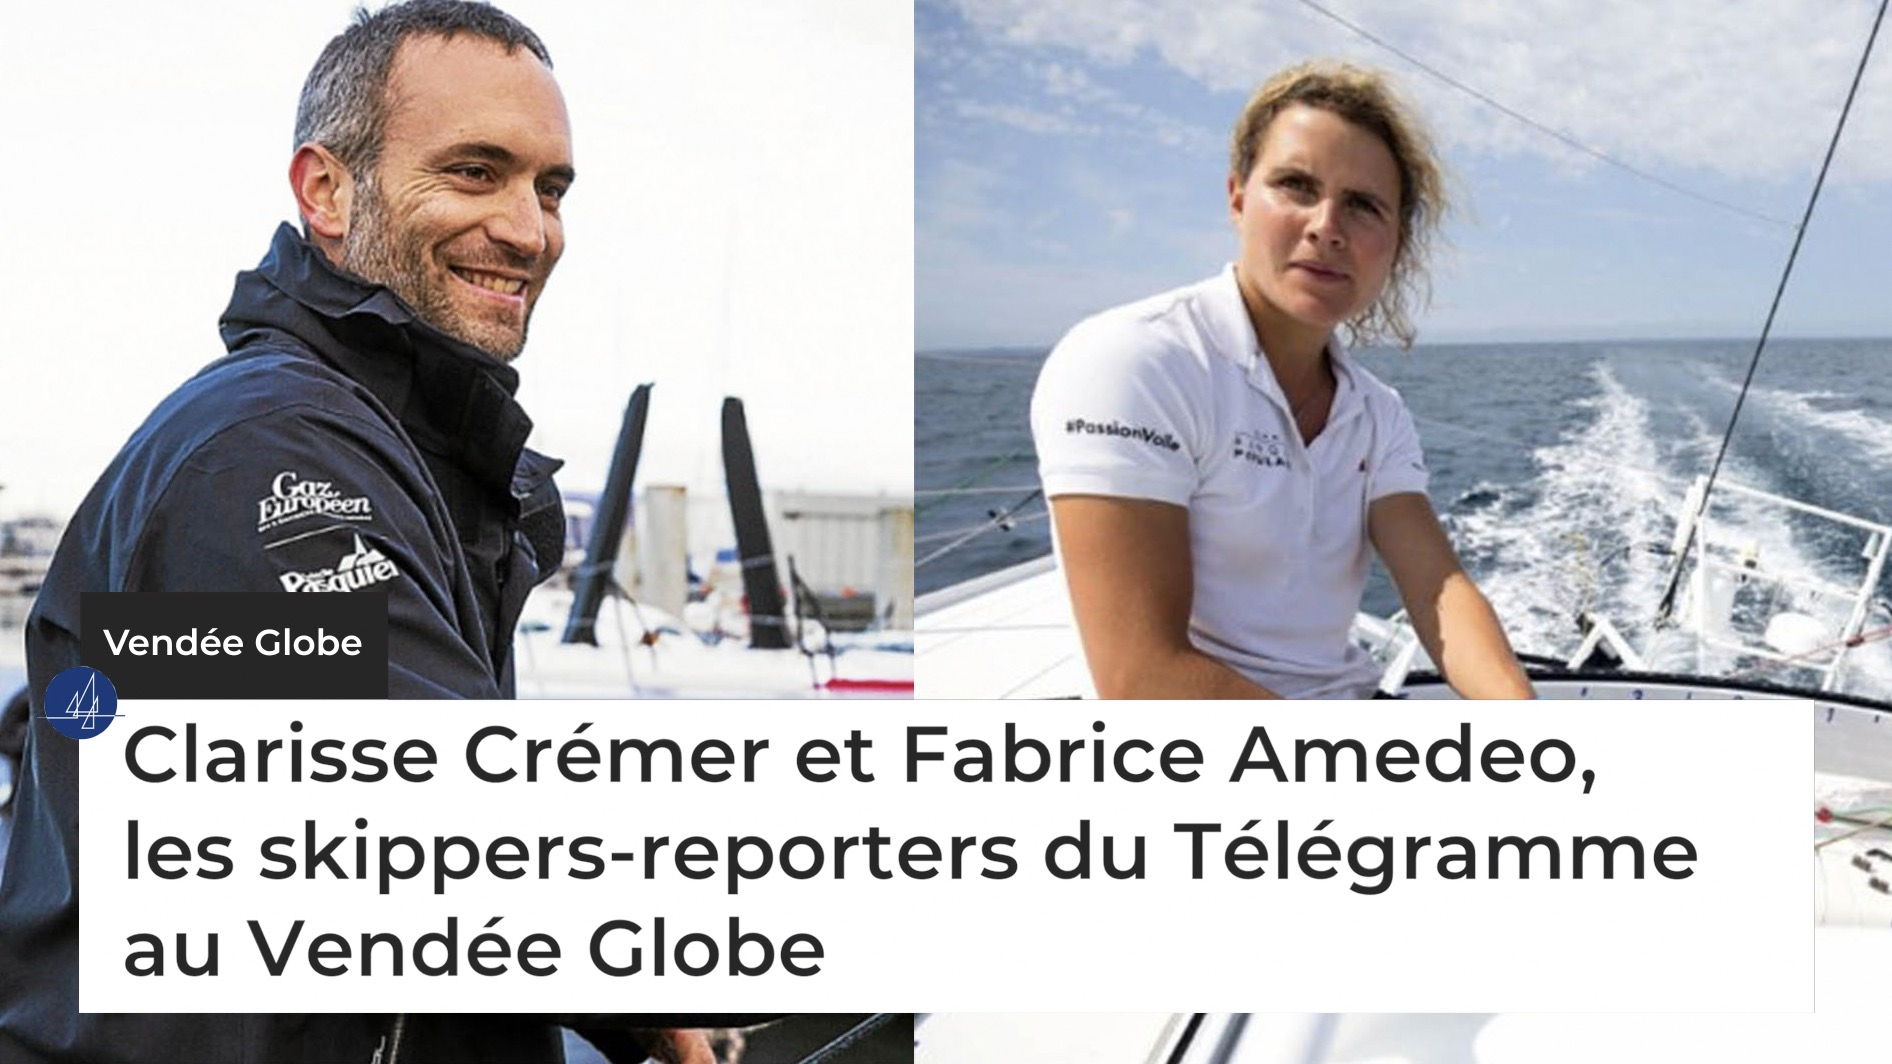 Clarisse Crémer et Fabrice Amedeo, les skippers-reporters du Télégramme au Vendée Globe (Le Télégramme)